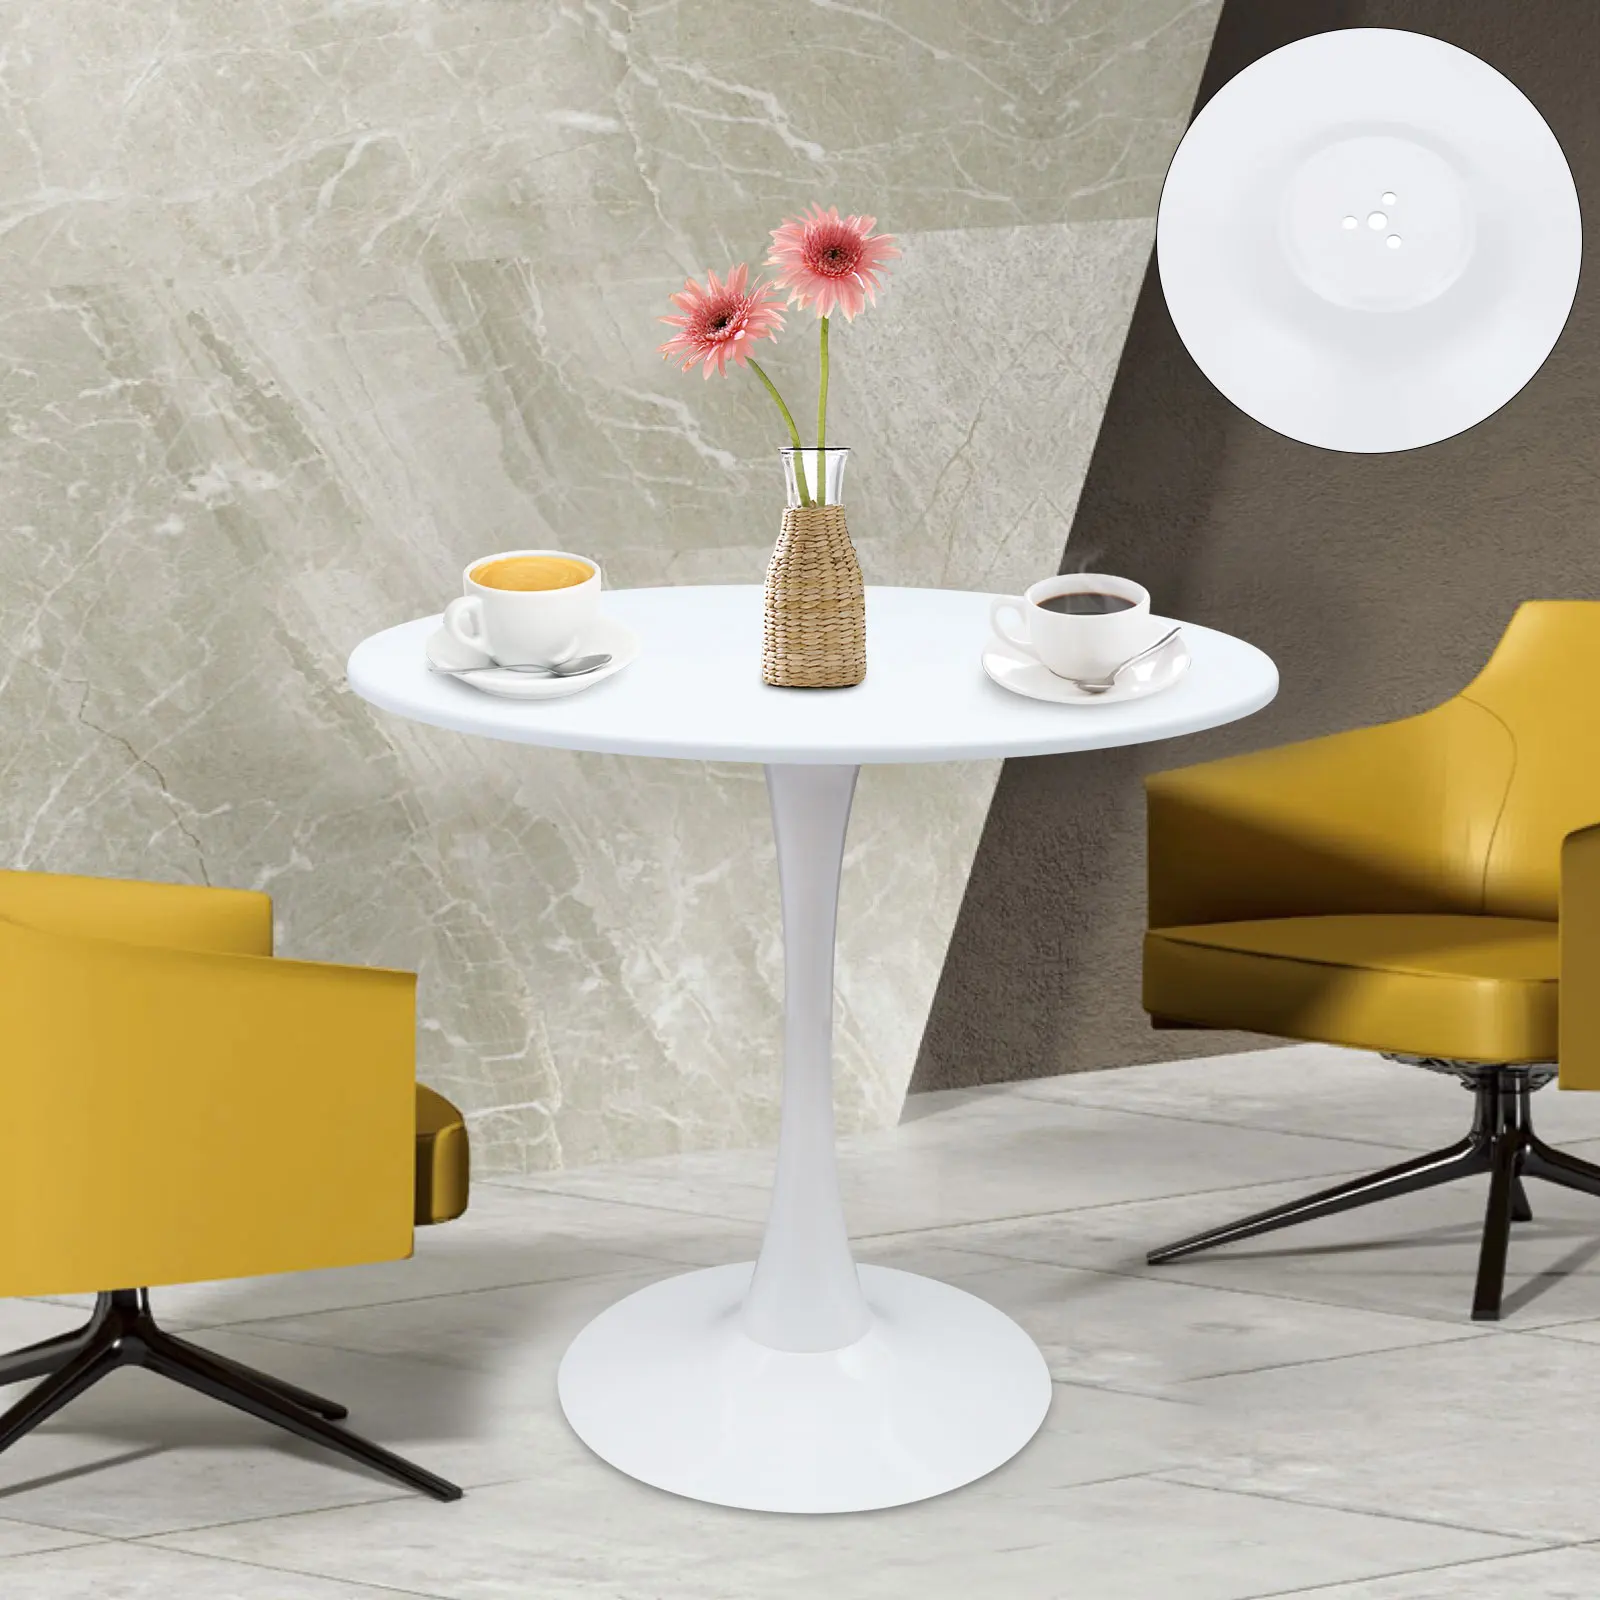 

Обеденный стол в скандинавском стиле, белый ресторанный рандомный стол для кафе и маникюра, круглые столы, современный журнальный столик, стол для отдыха, бесплатная доставка